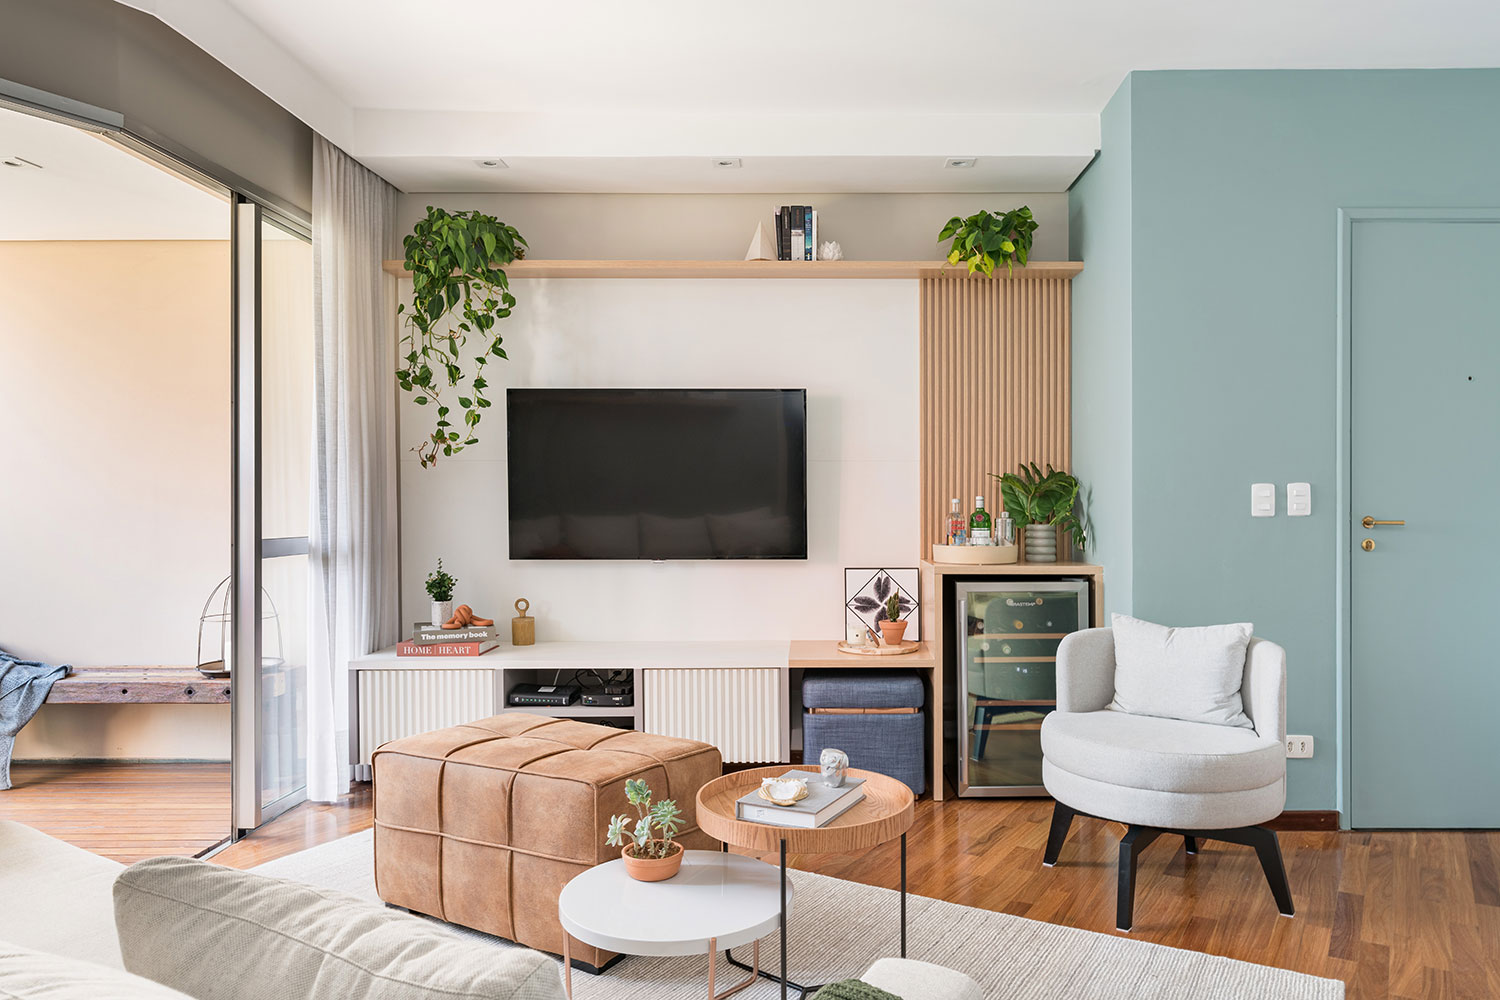 Sala de estar com piso de madeira, marcenaria azul, banco branco, televisão fixa na parede e plantas trepadeiras